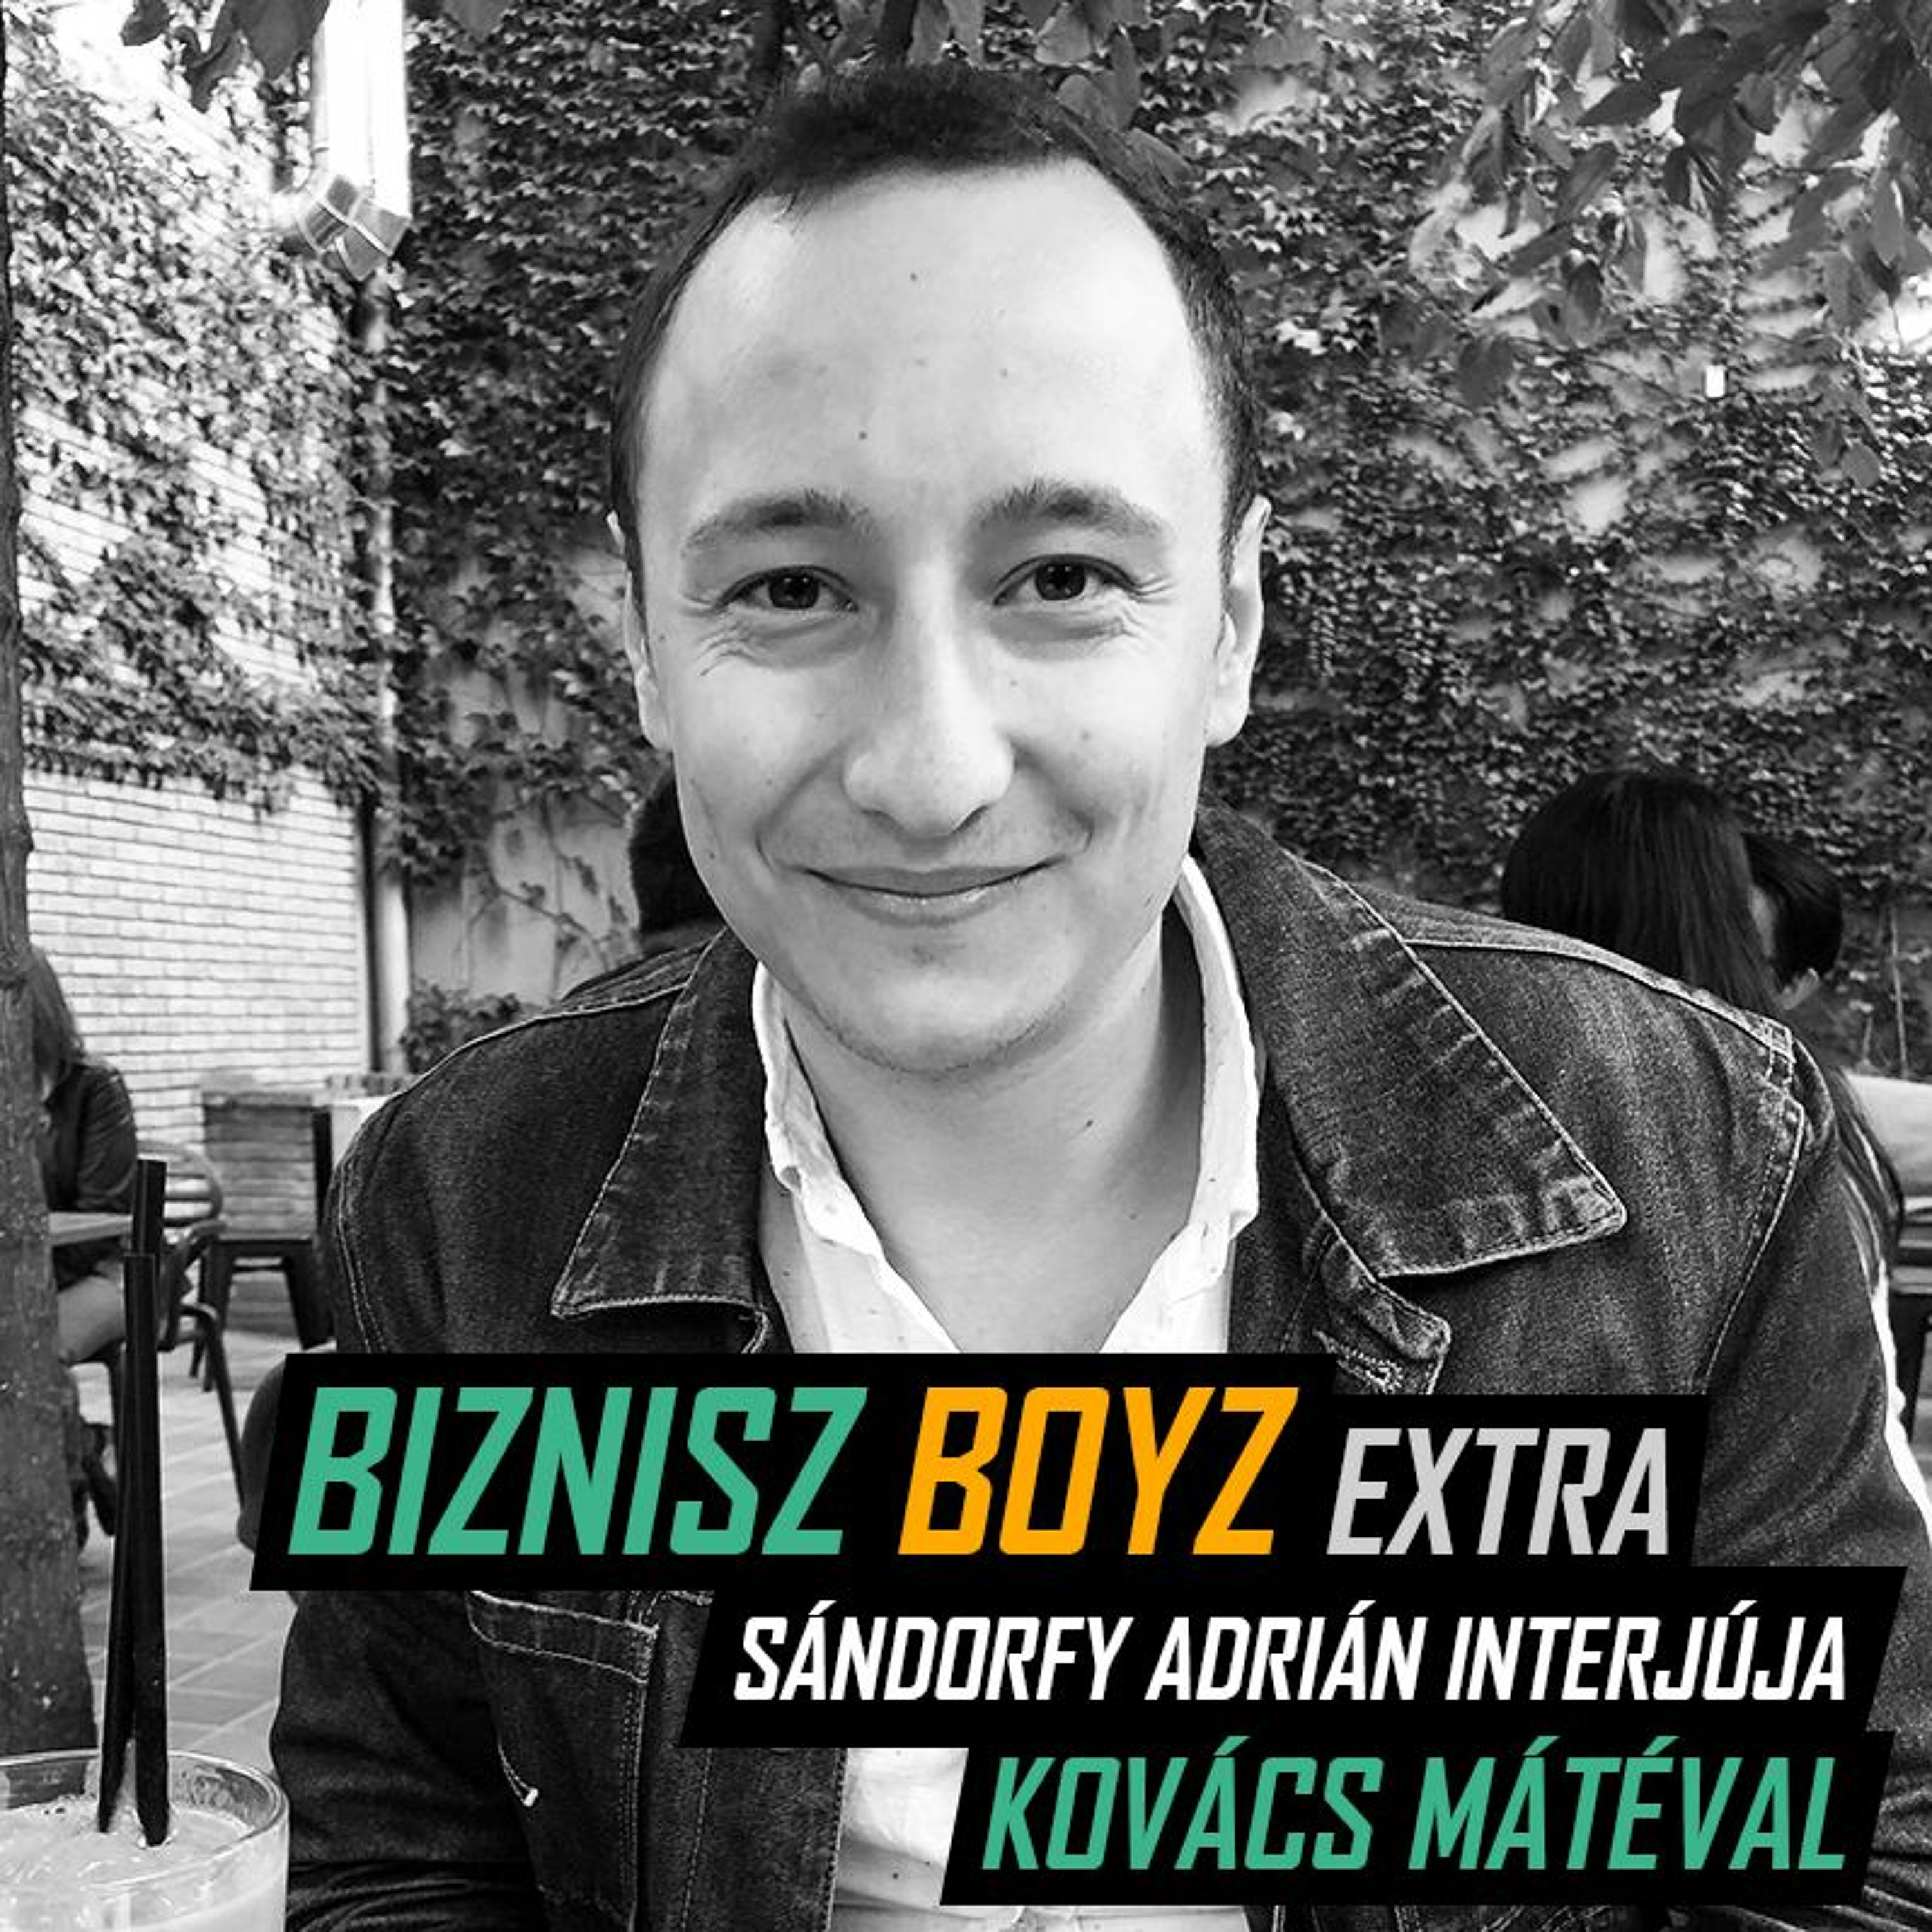 Extra - Az appgyáros vállalkozó, aki szabadon él és önzetlenül segít - Interjú Kovács Mátéval